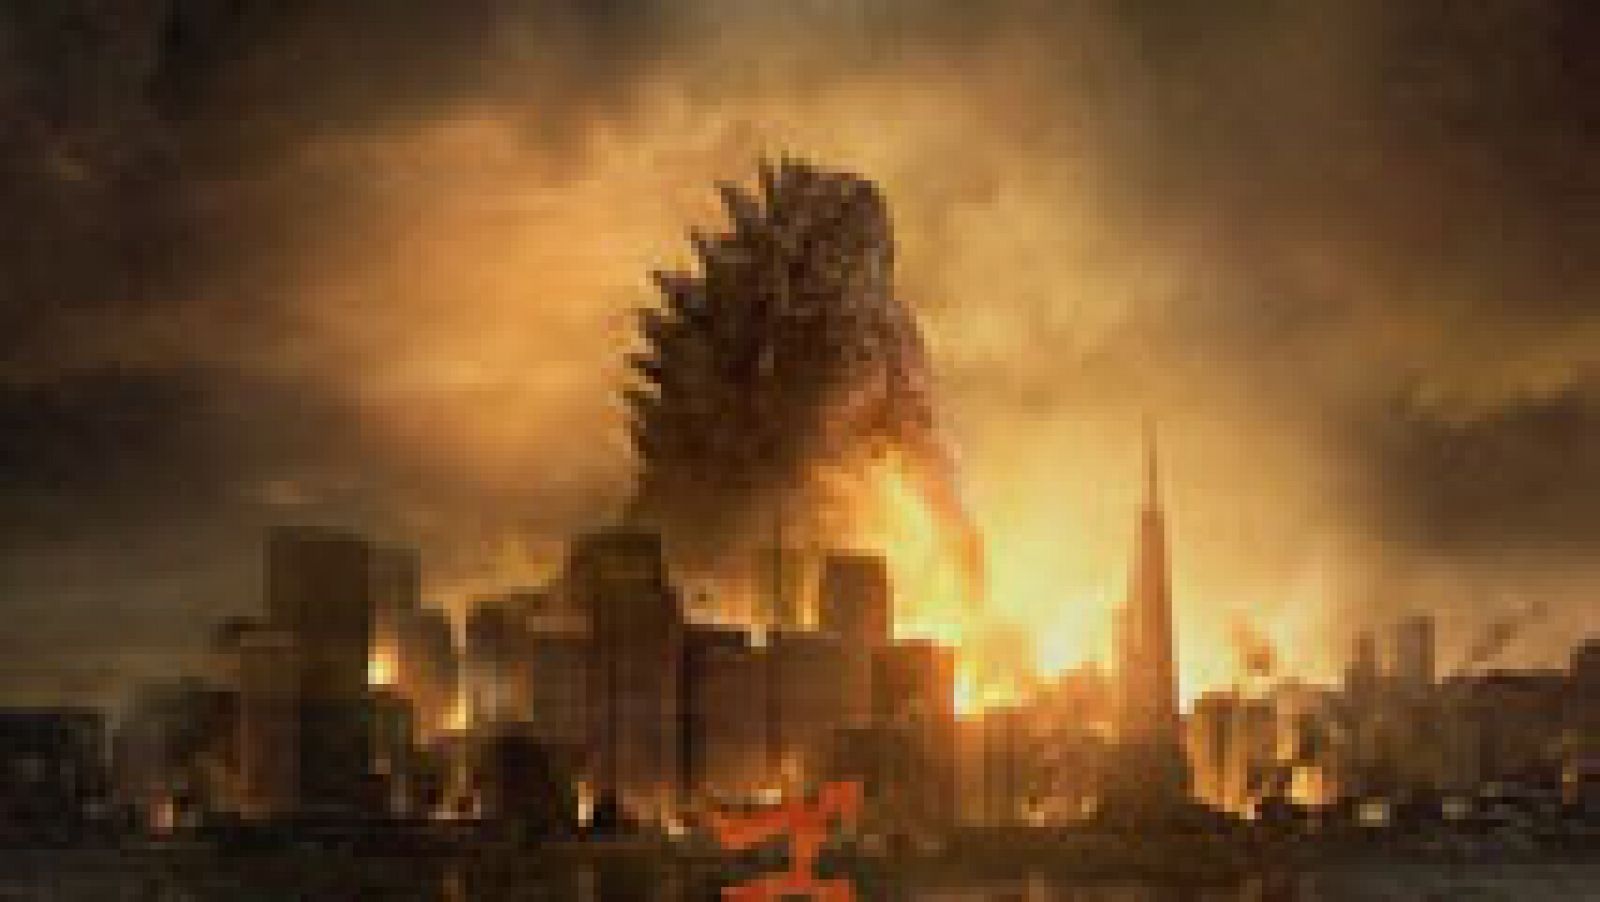 Tráiler de Godzilla, dirigida por Gareth Edwards ('Monstruoso') y protagonizada por Aaron Taylor-Johnson, Elizabeth Olsen, Juliette Binoche, Ken Watanabe y Sally Hawkins. 